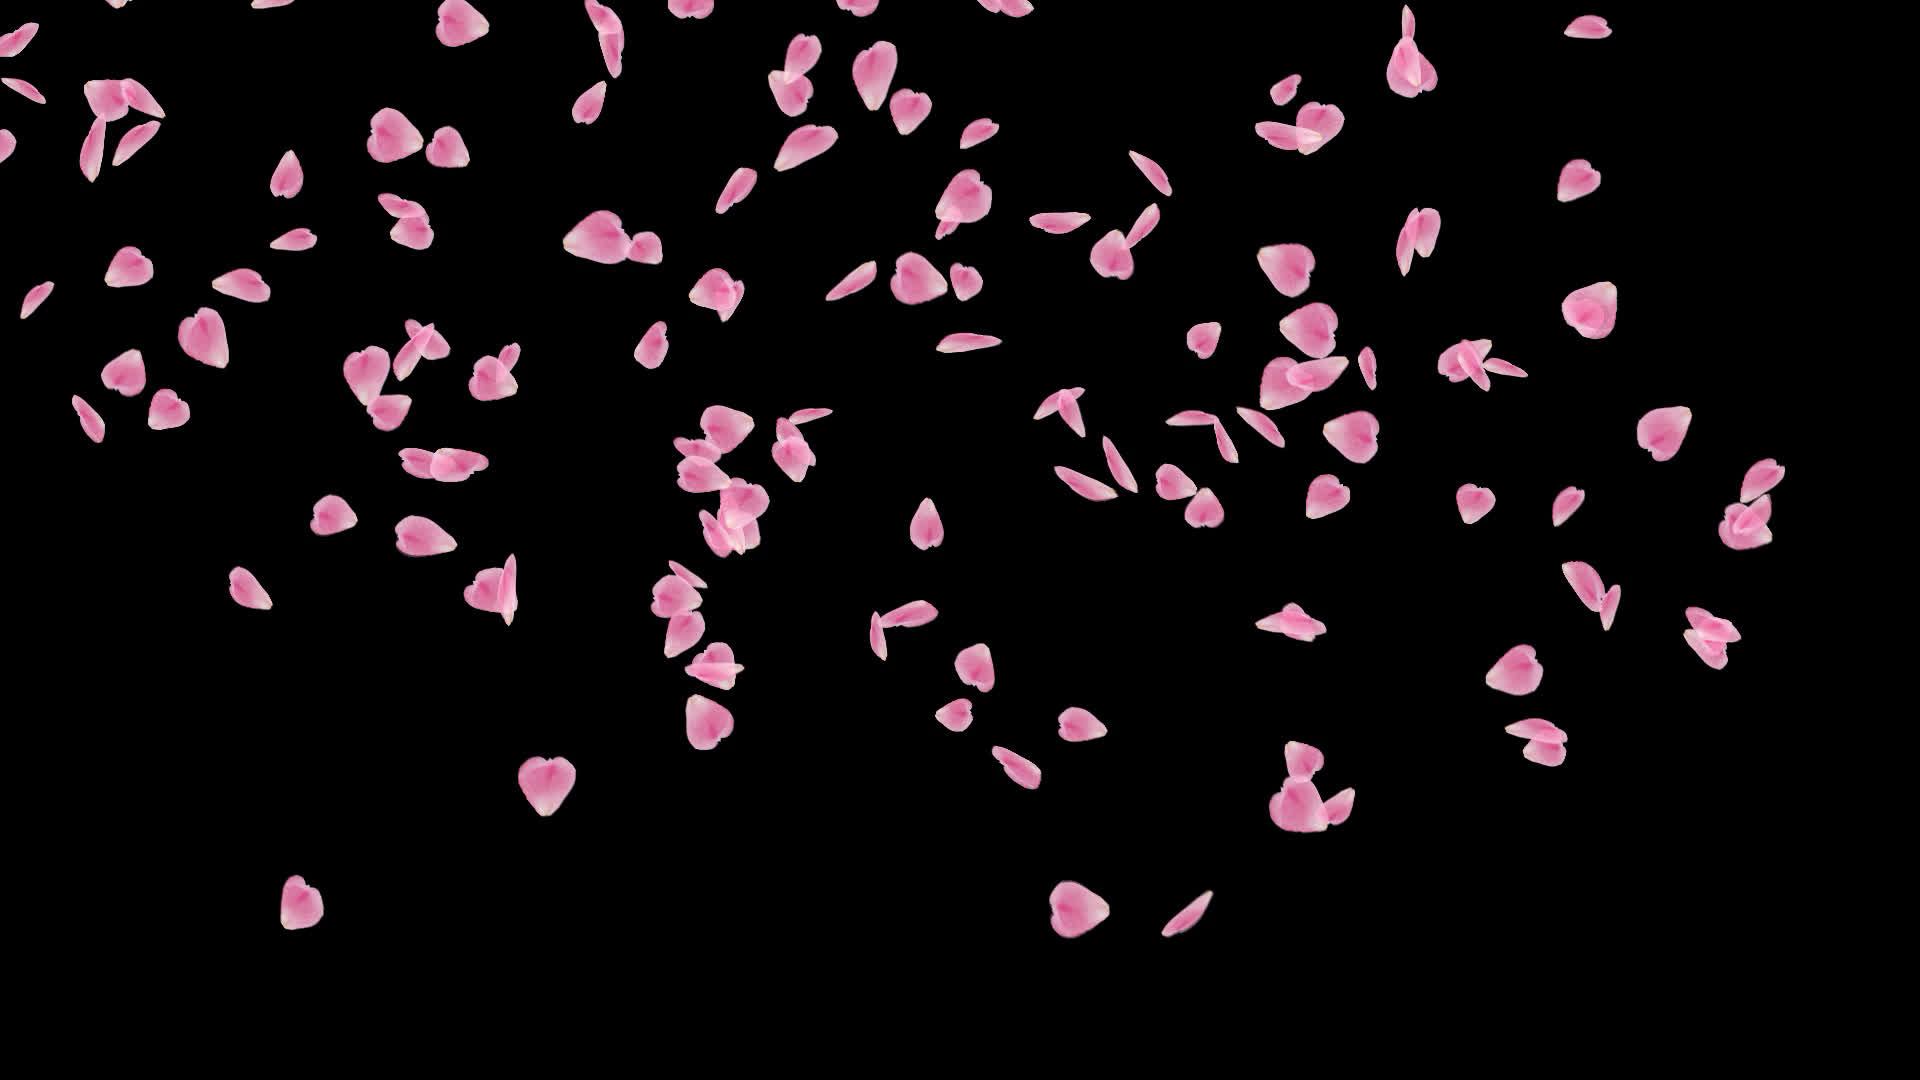 ゆっくりと舞い落ちる桜 大 の花びら動画素材別パターン Embed